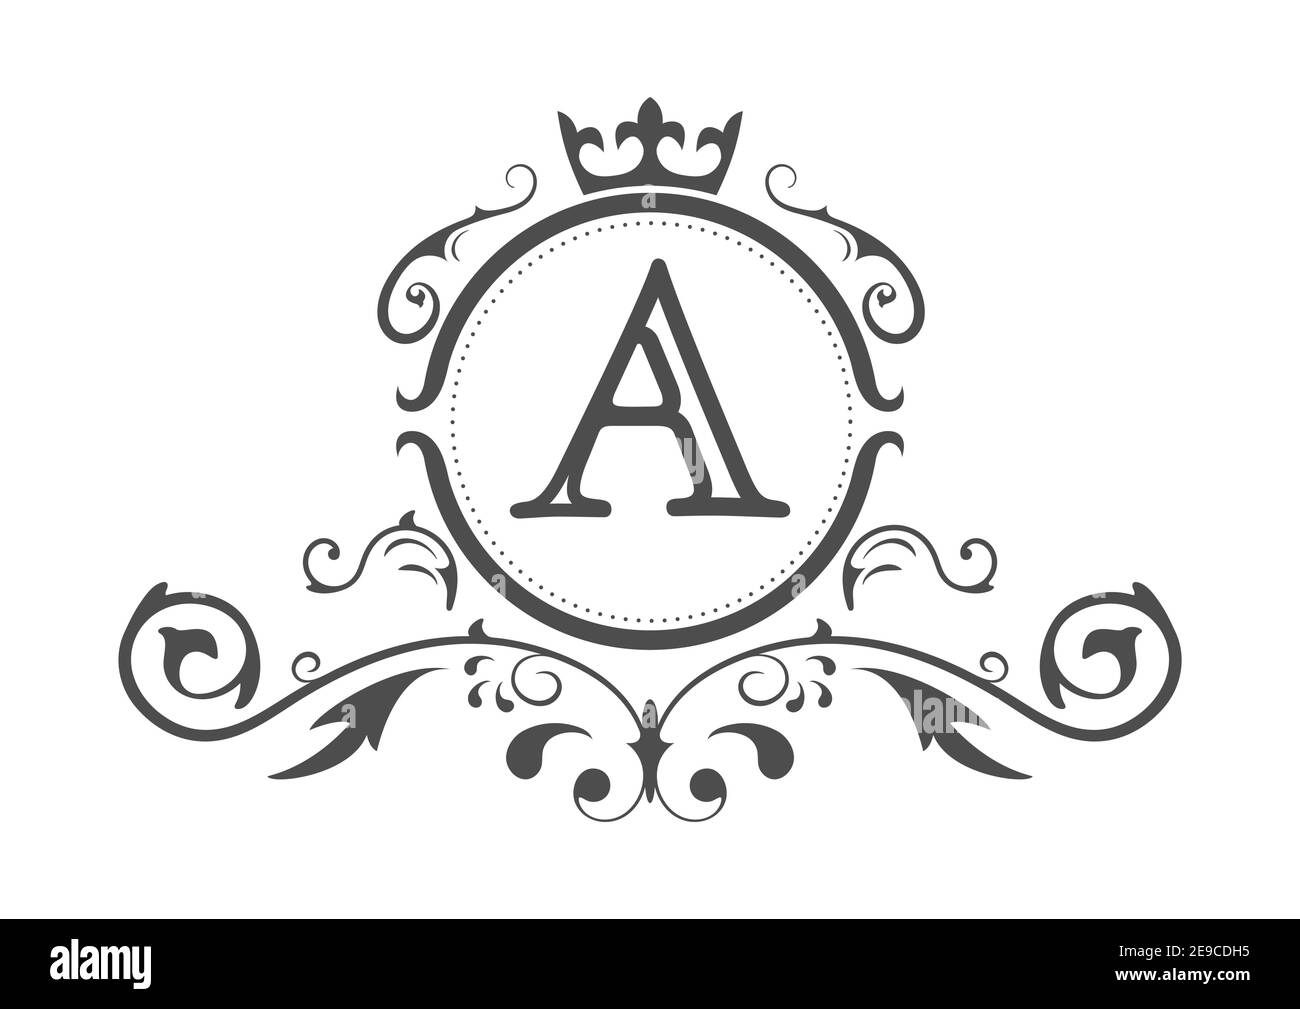 Lettera stilizzata A dell'alfabeto latino. Modello monogramma con ornamento  e corona per la progettazione di fiale, biglietti da visita, loghi, emblemi  e araldica. Ve Immagine e Vettoriale - Alamy